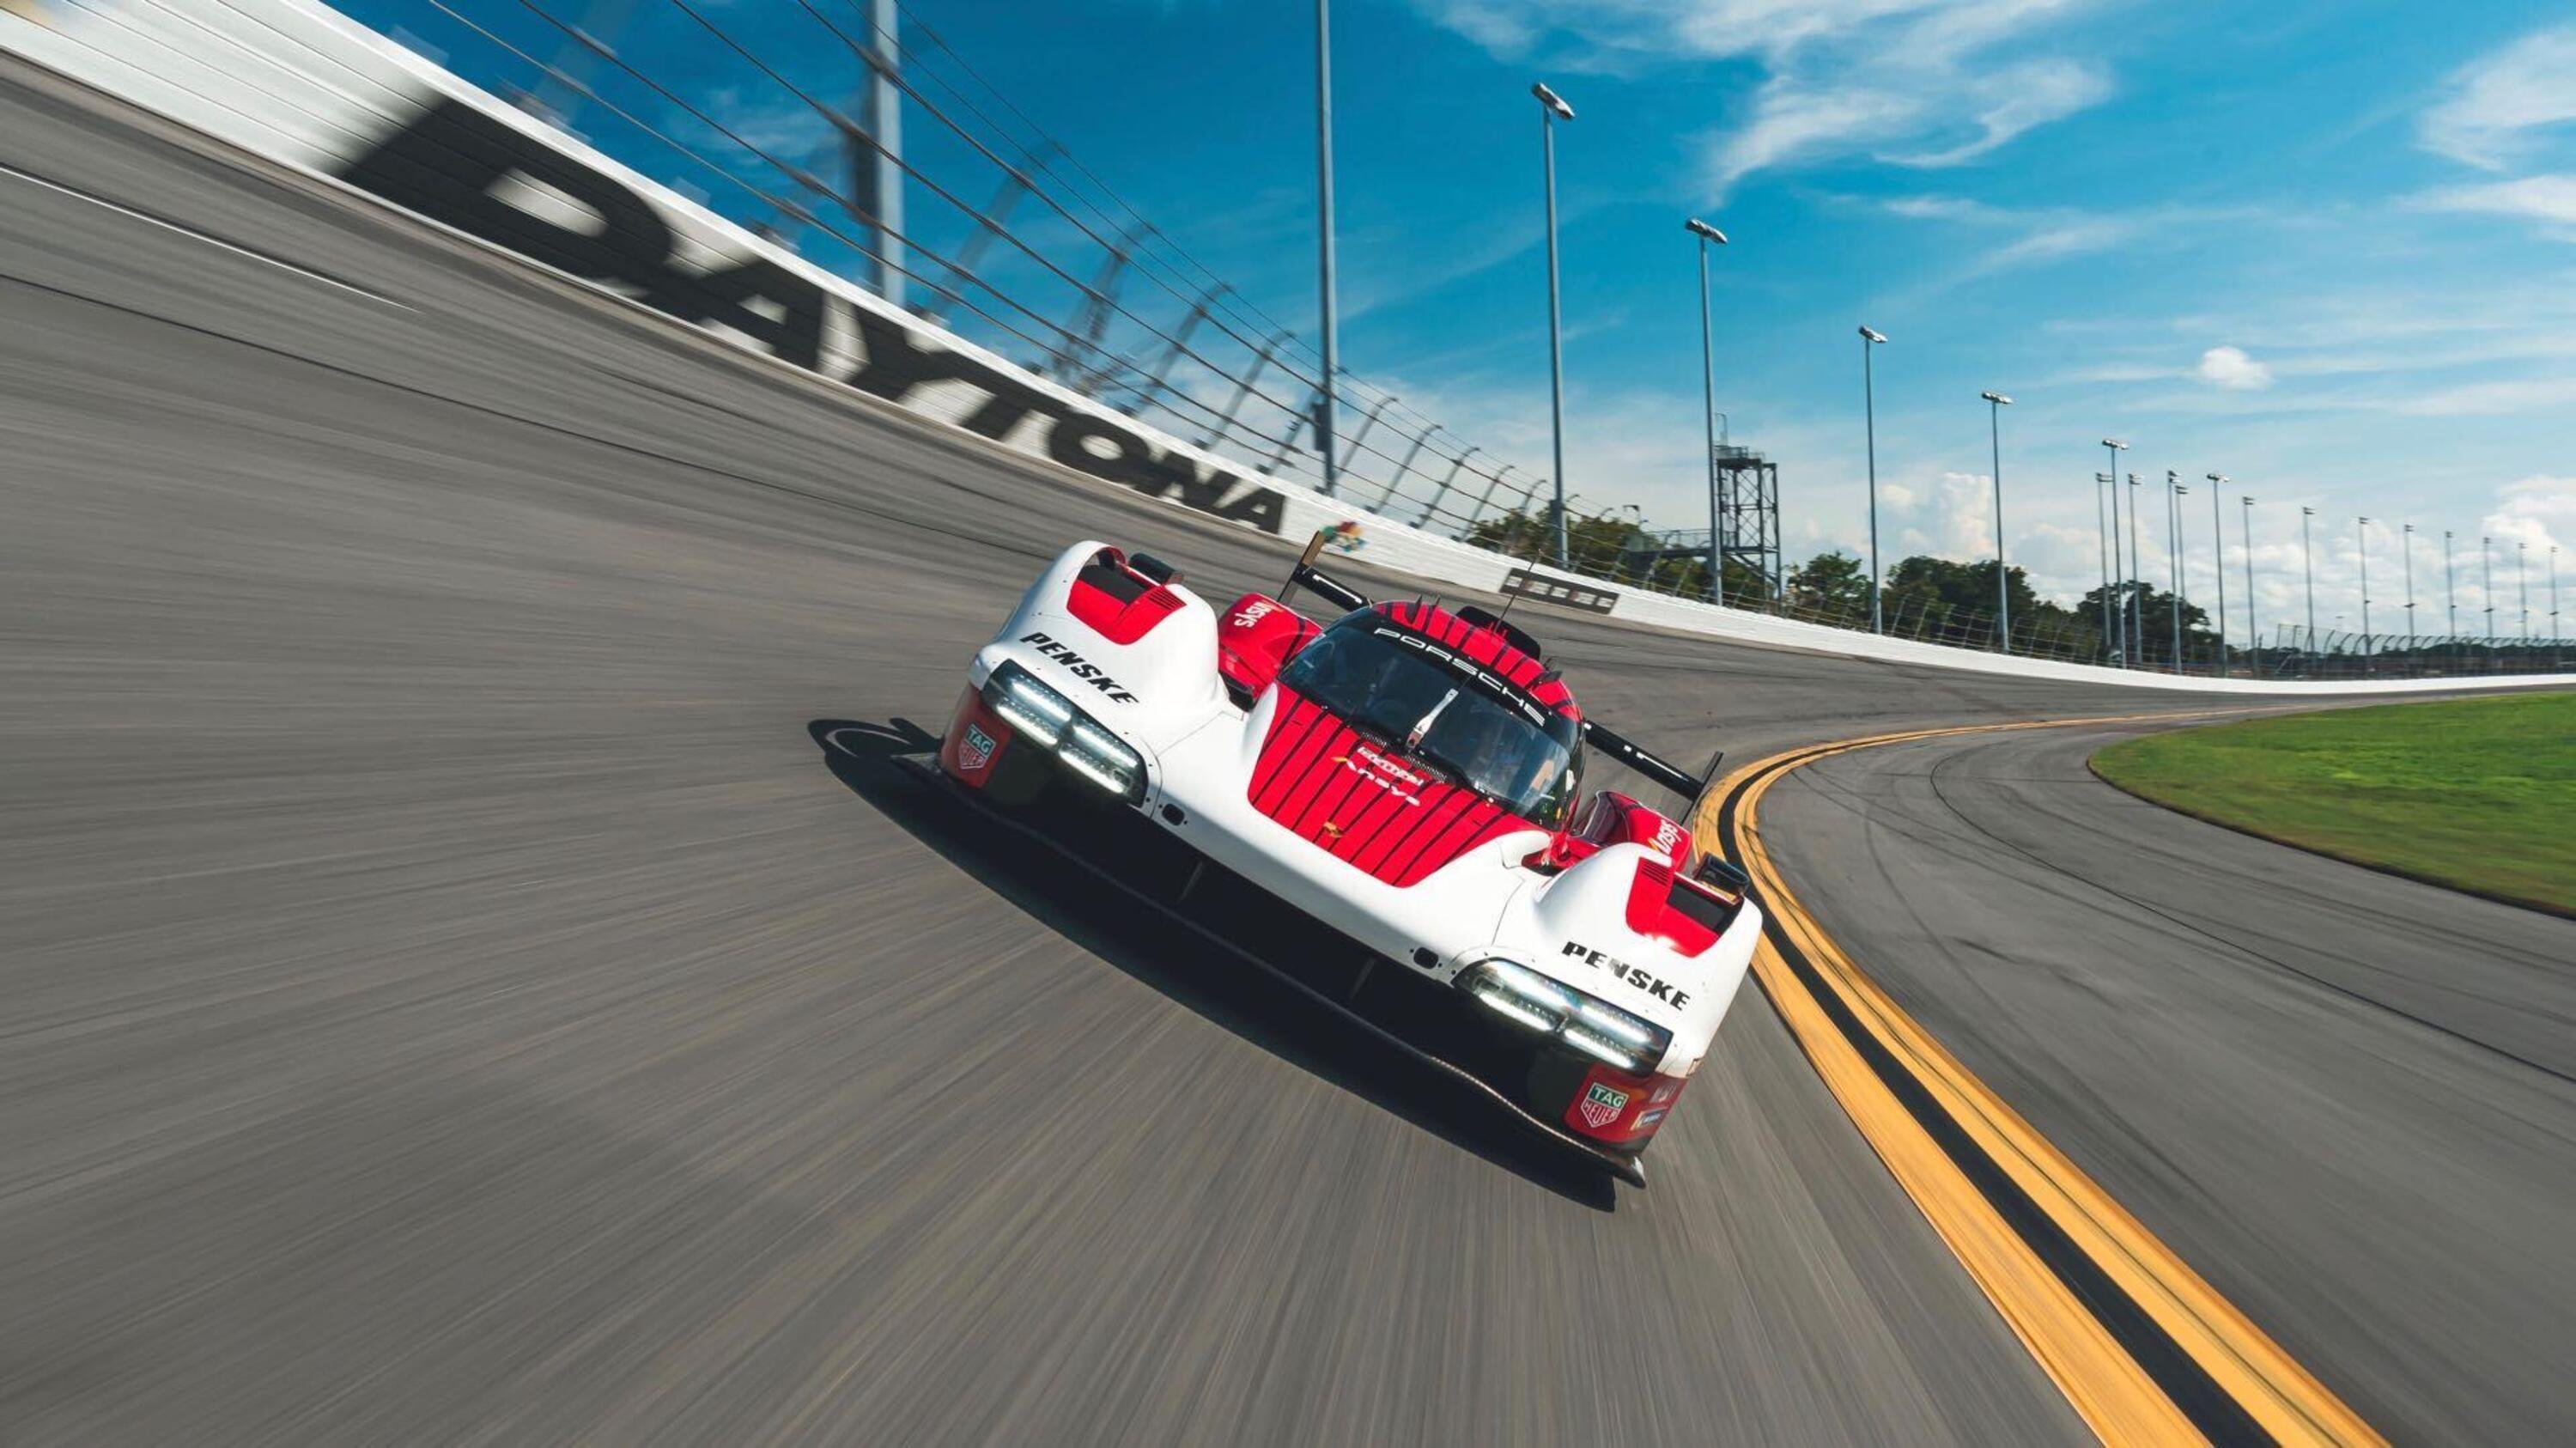 La Porsche 963 LMDh gi&agrave; in pista a Daytona: 2247 km di prove (da Stoccarda a Istanbul)